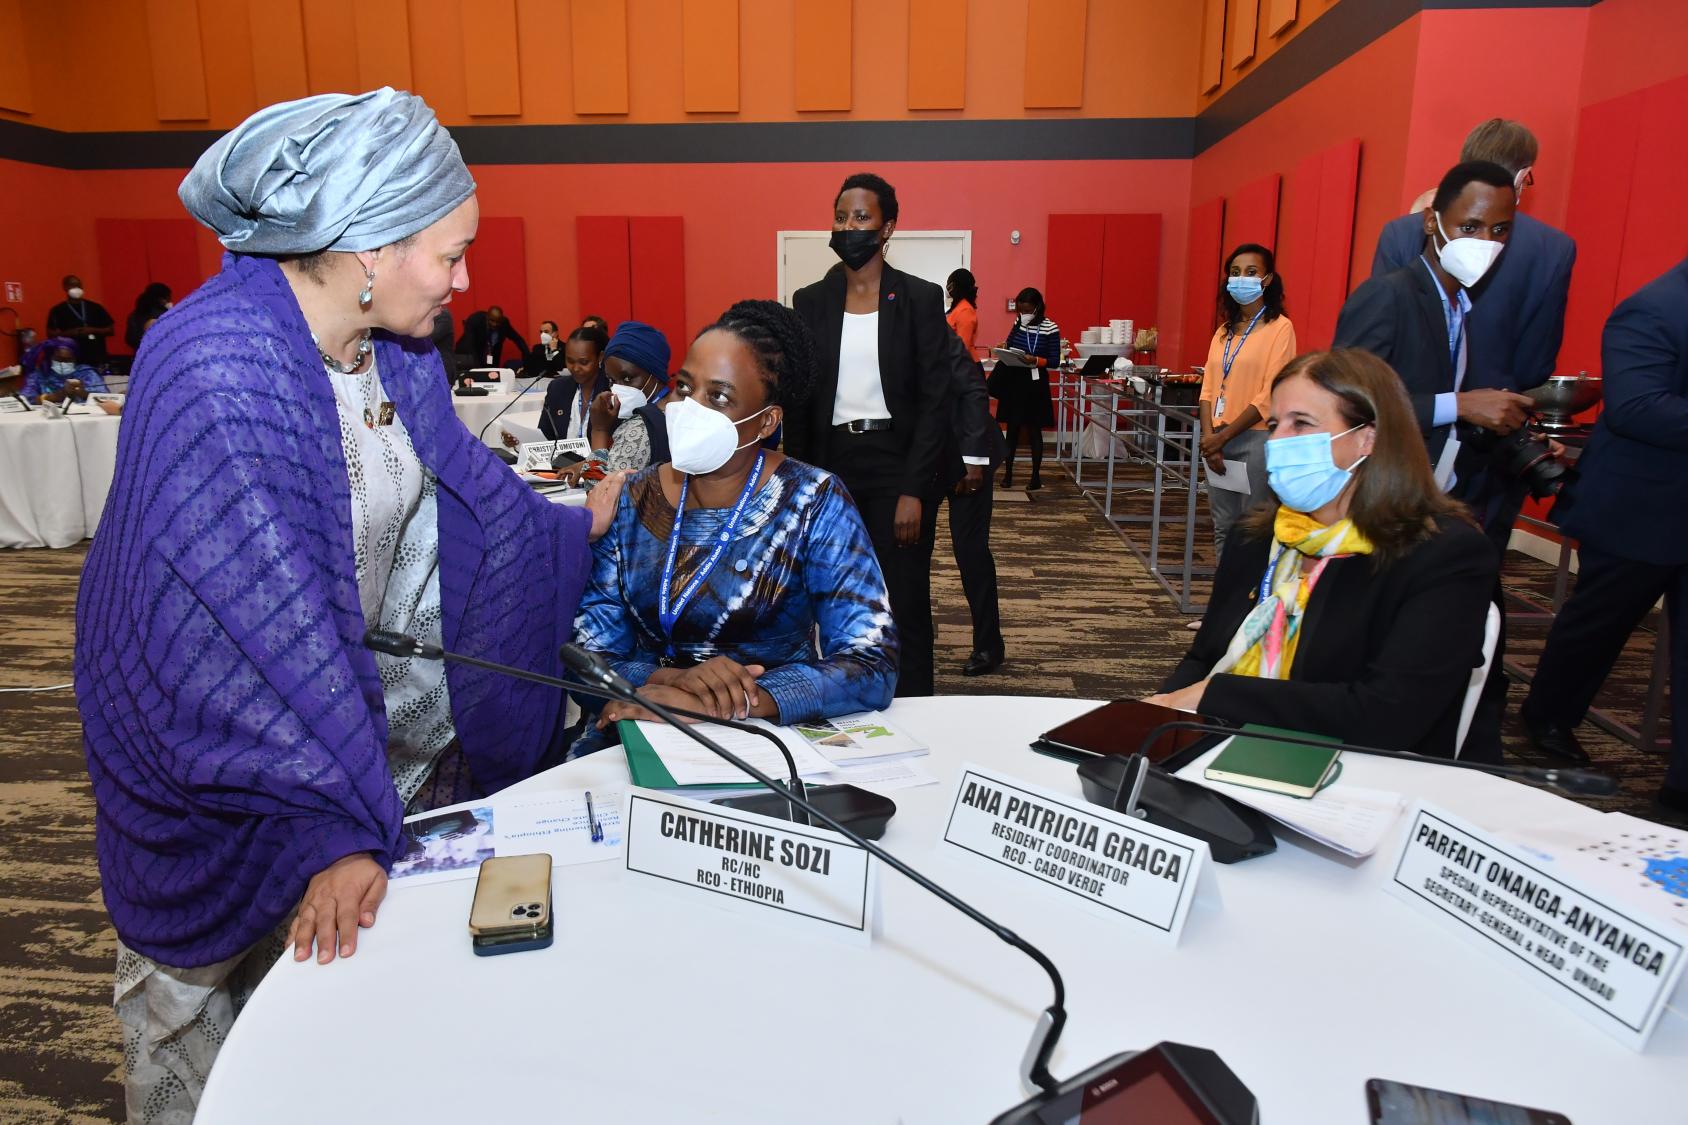 La Vicesecretaria General, Amina J. Mohammed (izquierda), expresó su agradecimiento a Catherine Sozi, Coordinadora Residente en Etiopía.